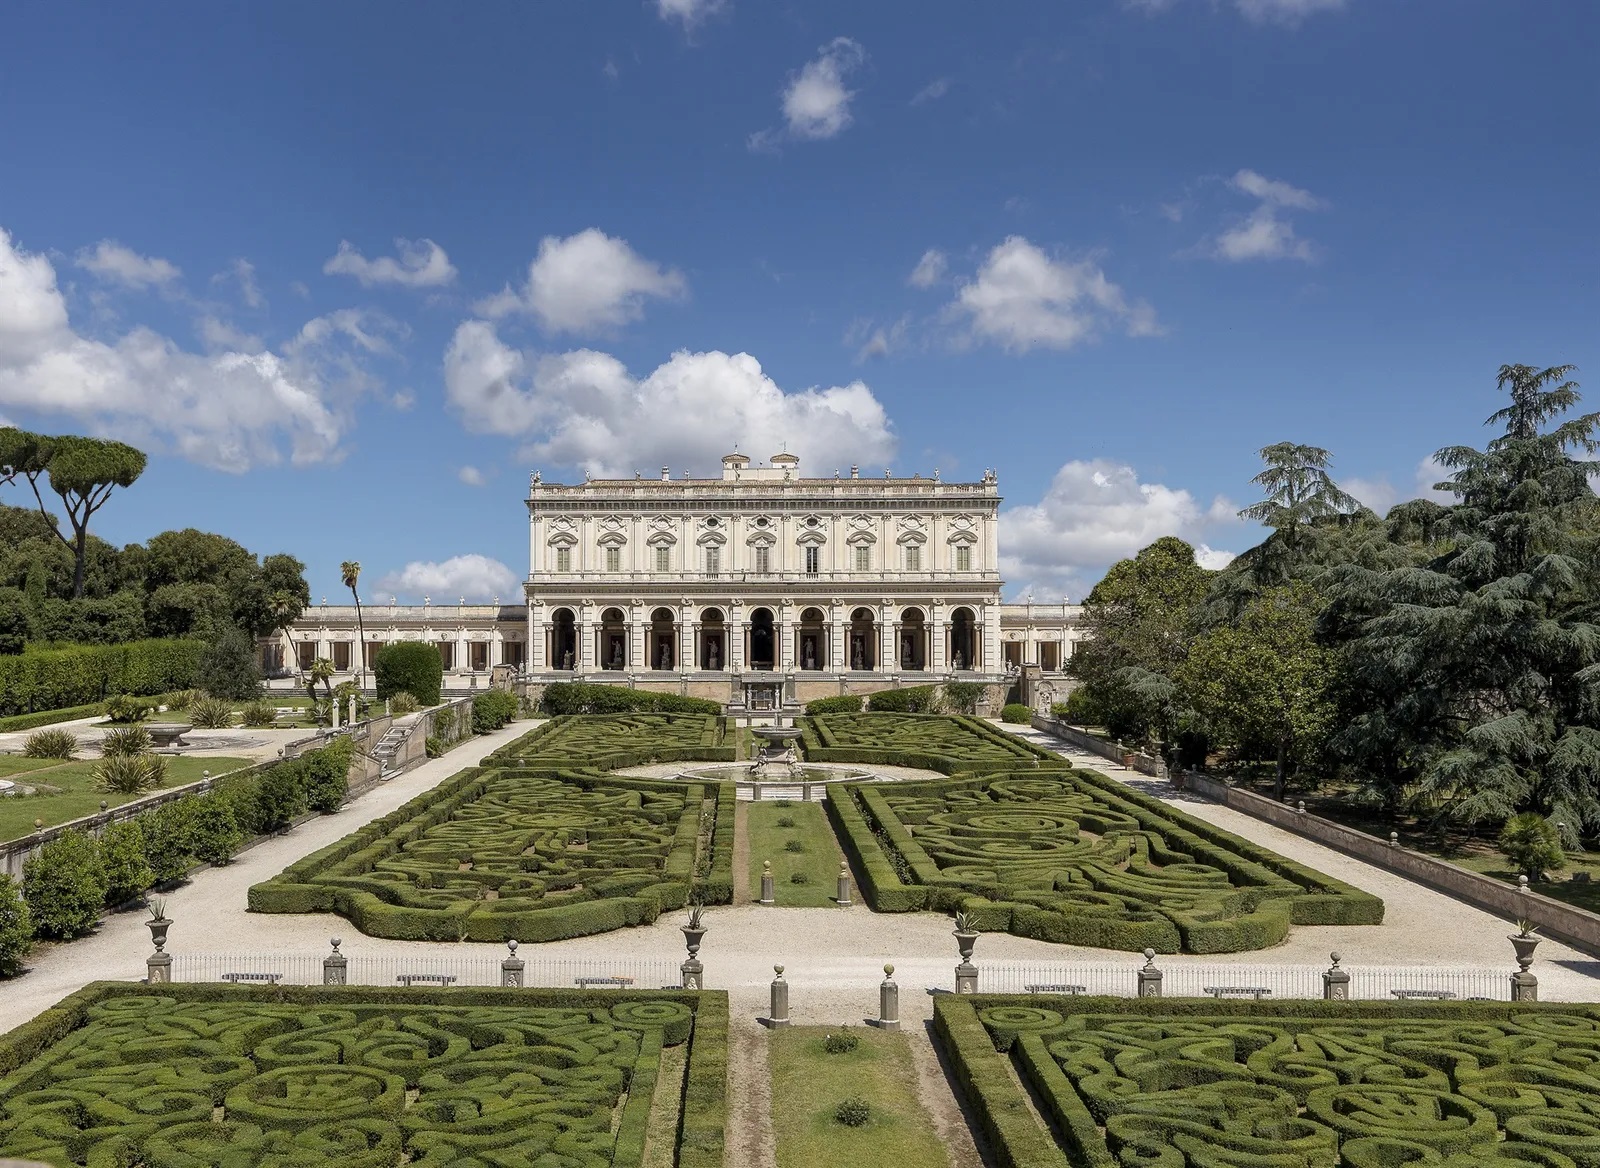 The Torlonia Foundation in Rome opens the antiquarium of Villa Albani to the public 147